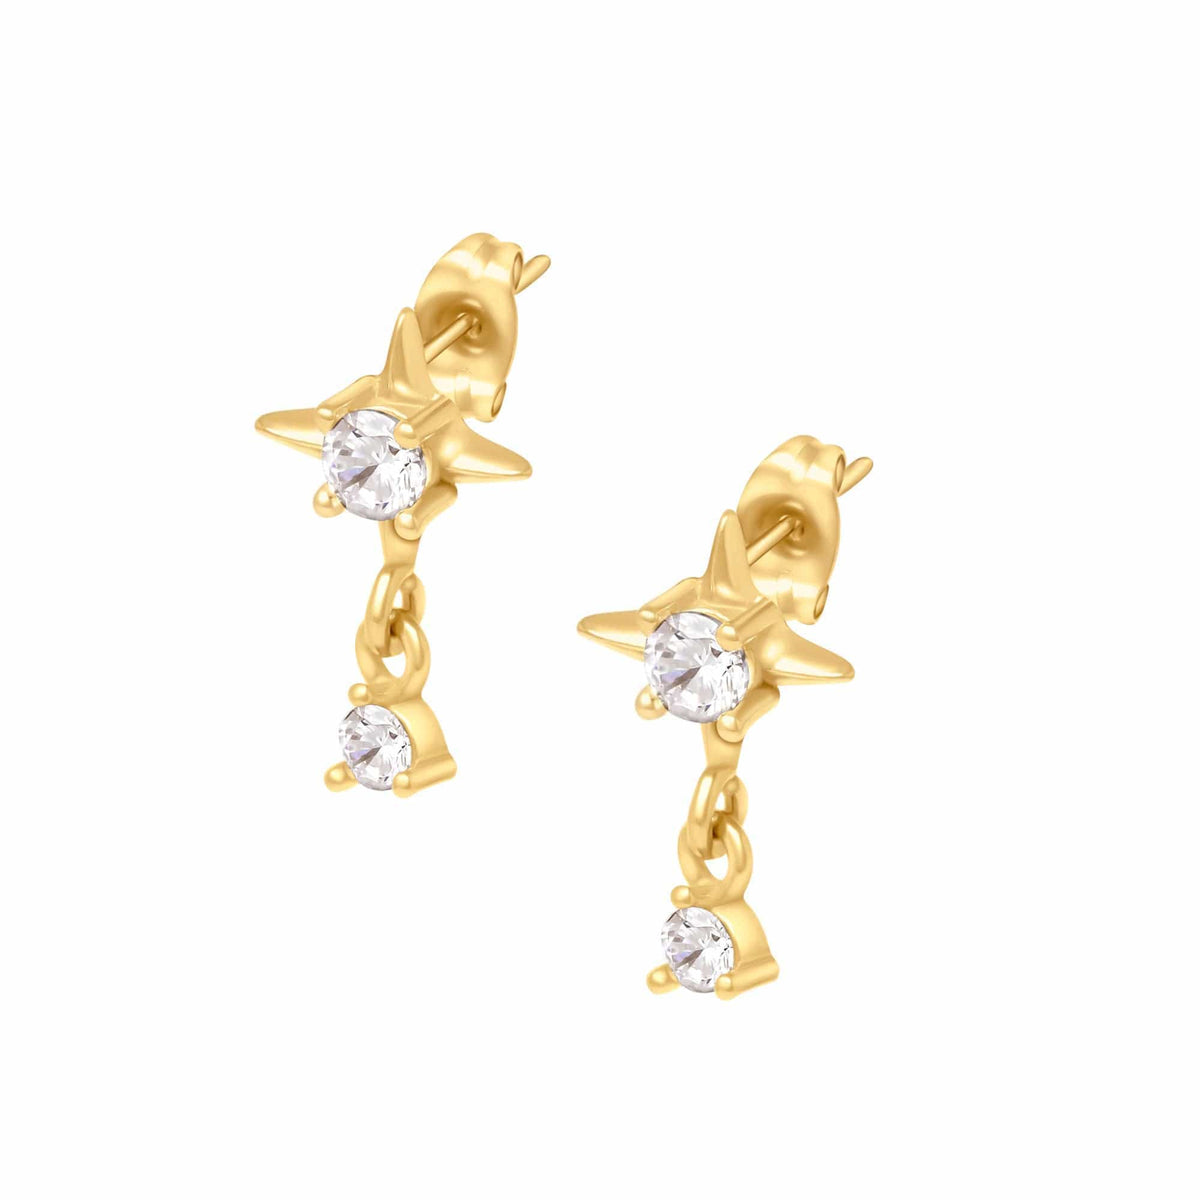 BohoMoon Stainless Steel Shooting Star Stud Earrings Gold